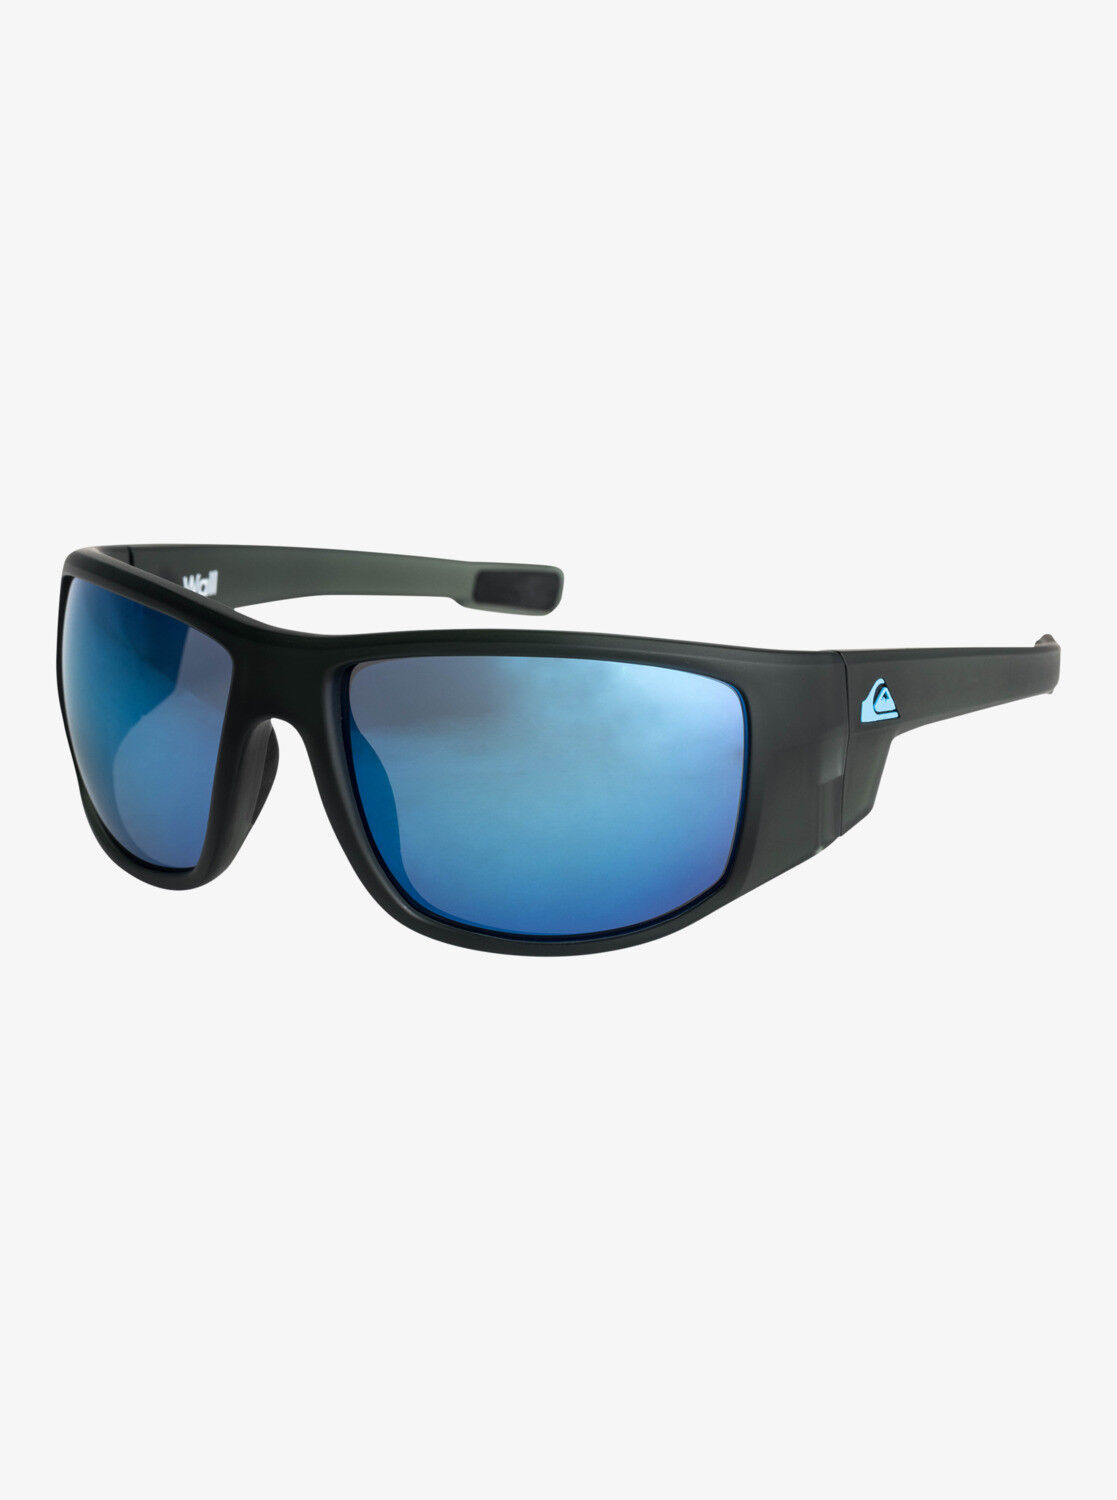 Quiksilver Wall - Sunglasses - Men's | Hardloop